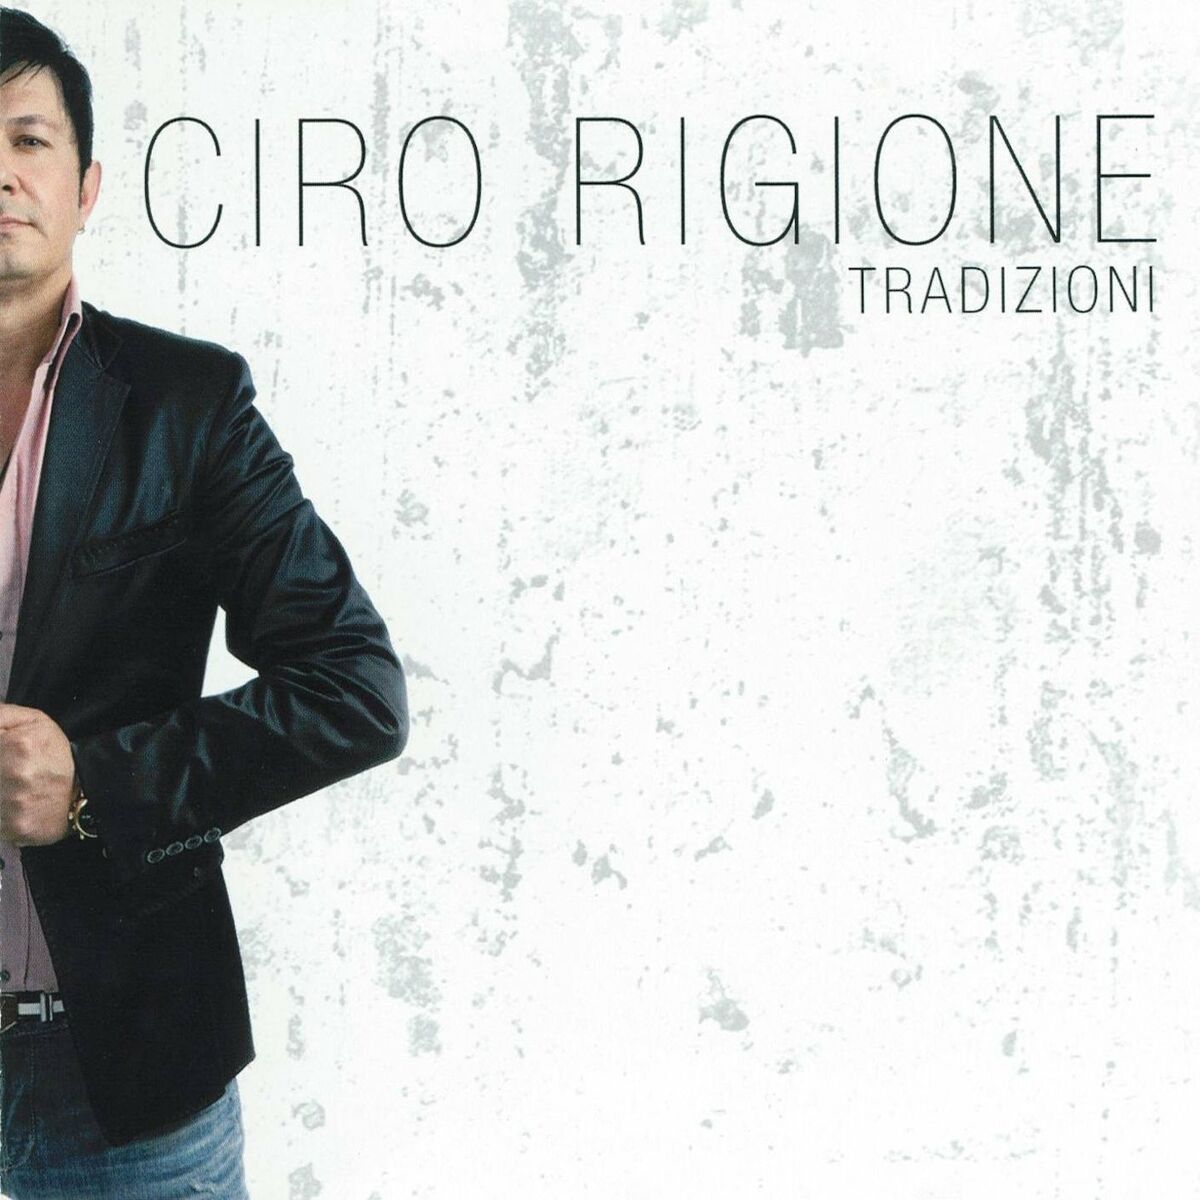 CD/イタリア:ナポリ:シンガーソングライター/Ciro Rigione - Chillo Va Pazze Pe'tte/Luntane ‘a te’/Se stutate ‘o sole